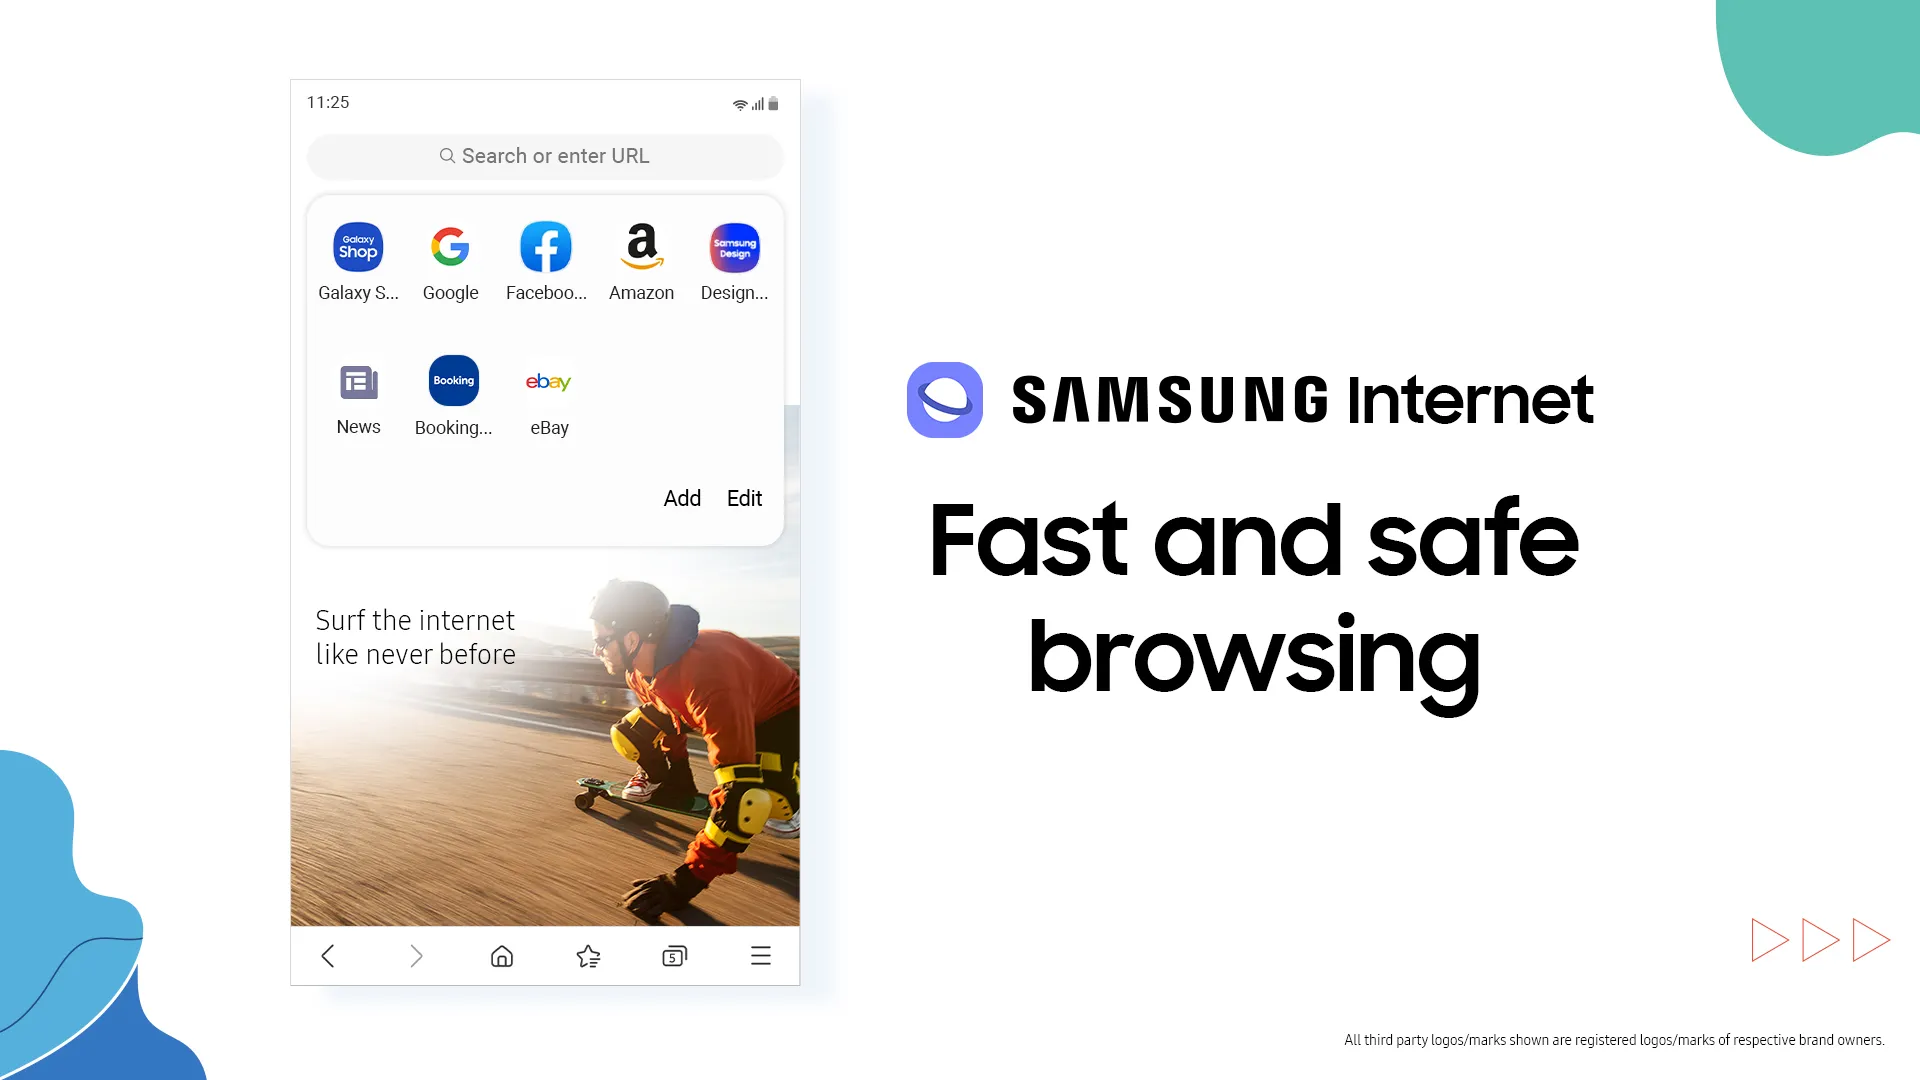 Giao diện sử dụng của Samsung Internet rất giống với giao diện trên điện thoại 